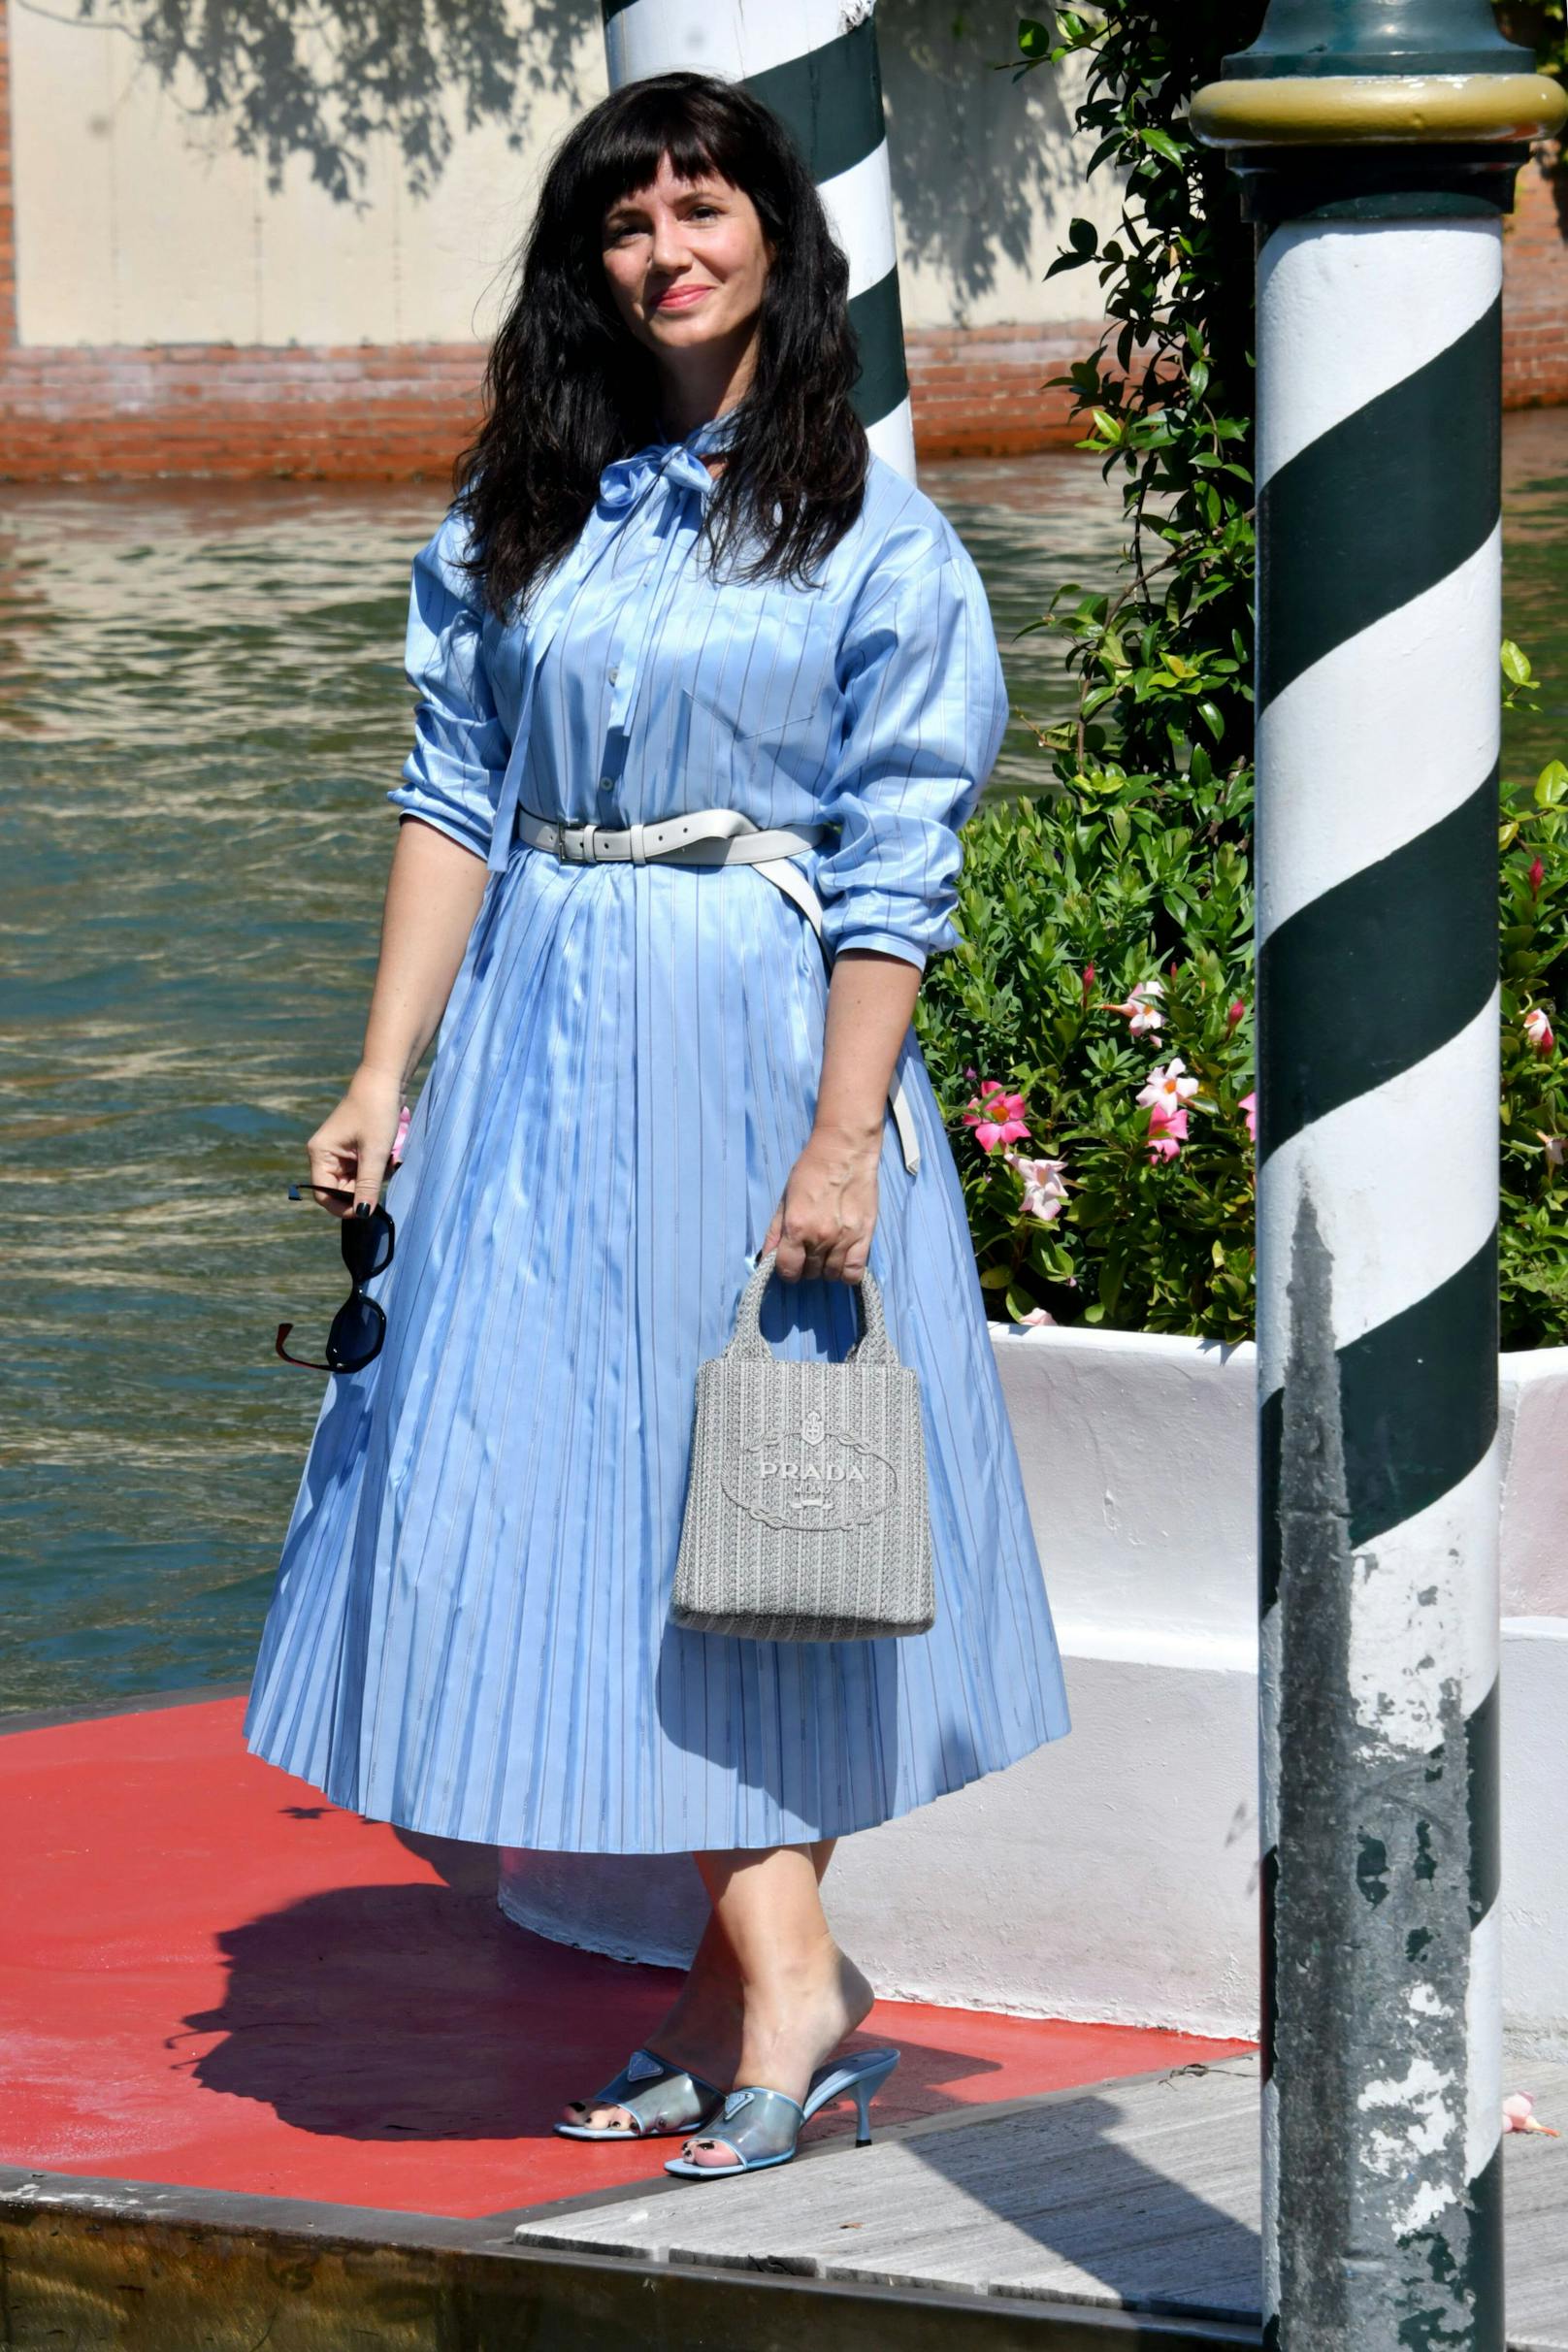 Die argentinische Schauspielerin Griselda Siciliani ist in Venedig angekommen. Passend zu ihrem blauen Kleid trägt sie Tasche und Schuhe von Prada.